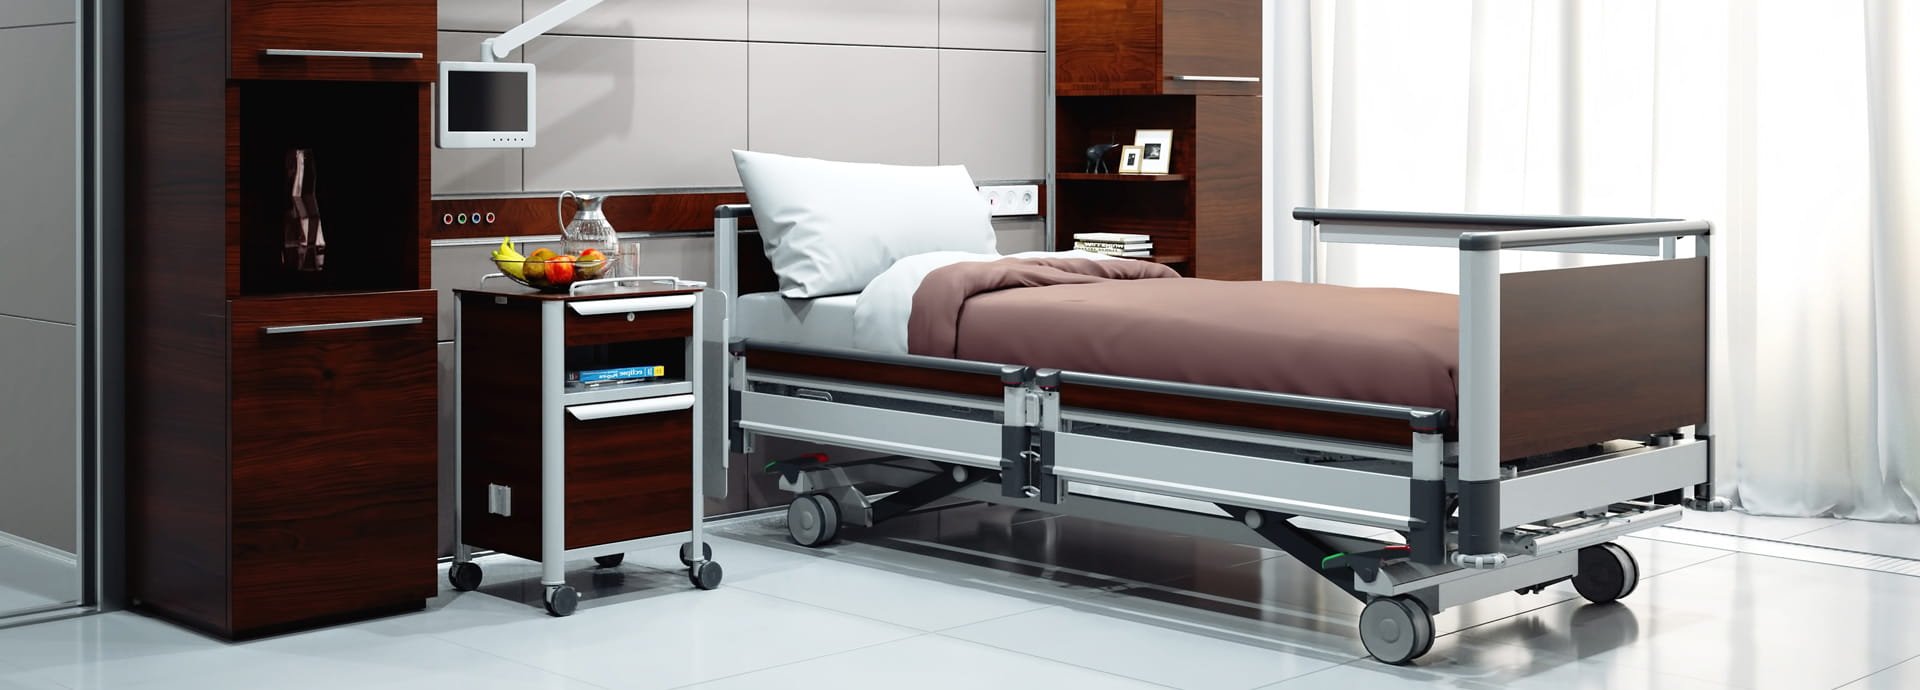 Медицинская кровать с электроприводом Linet Image 3